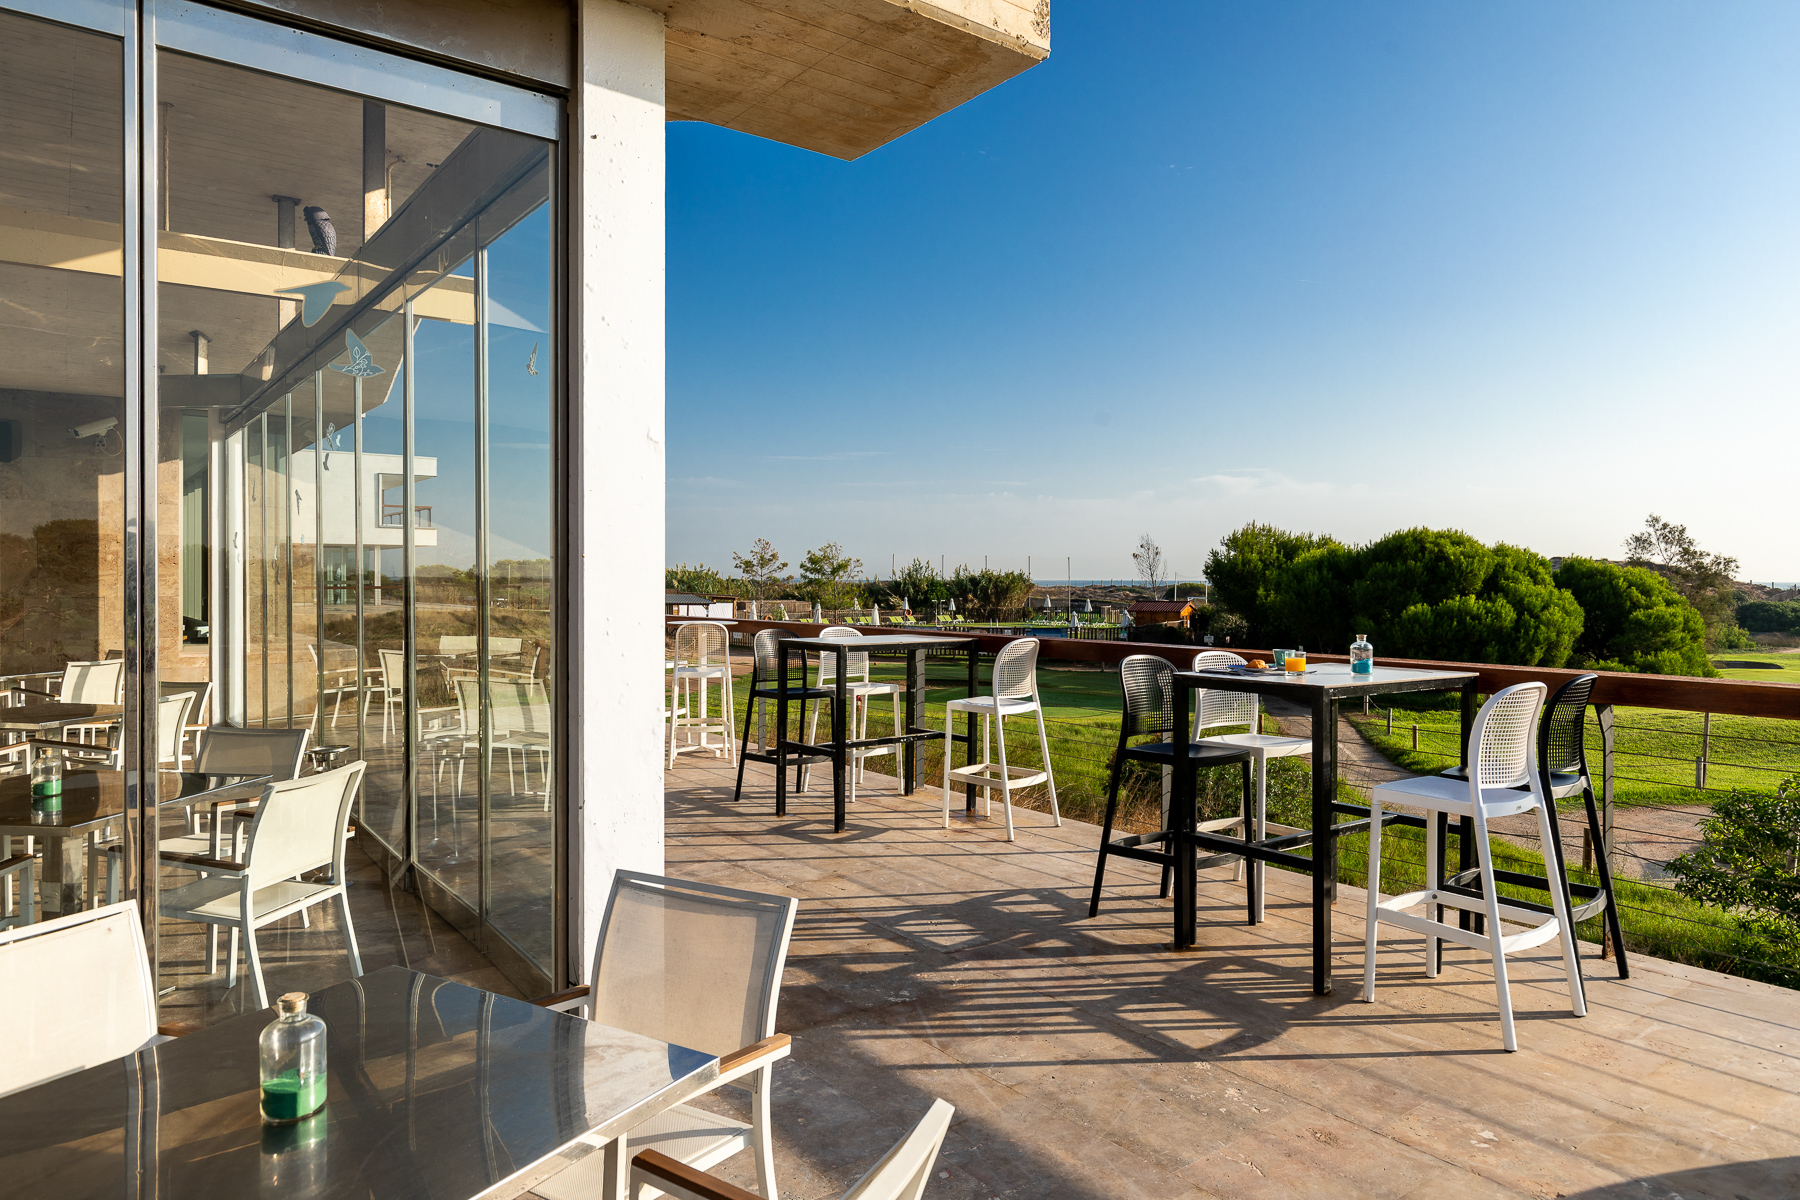 Terraza del Restaurante La Barraca del Mediterráneo del Parador de El Saler con vistas al jardín